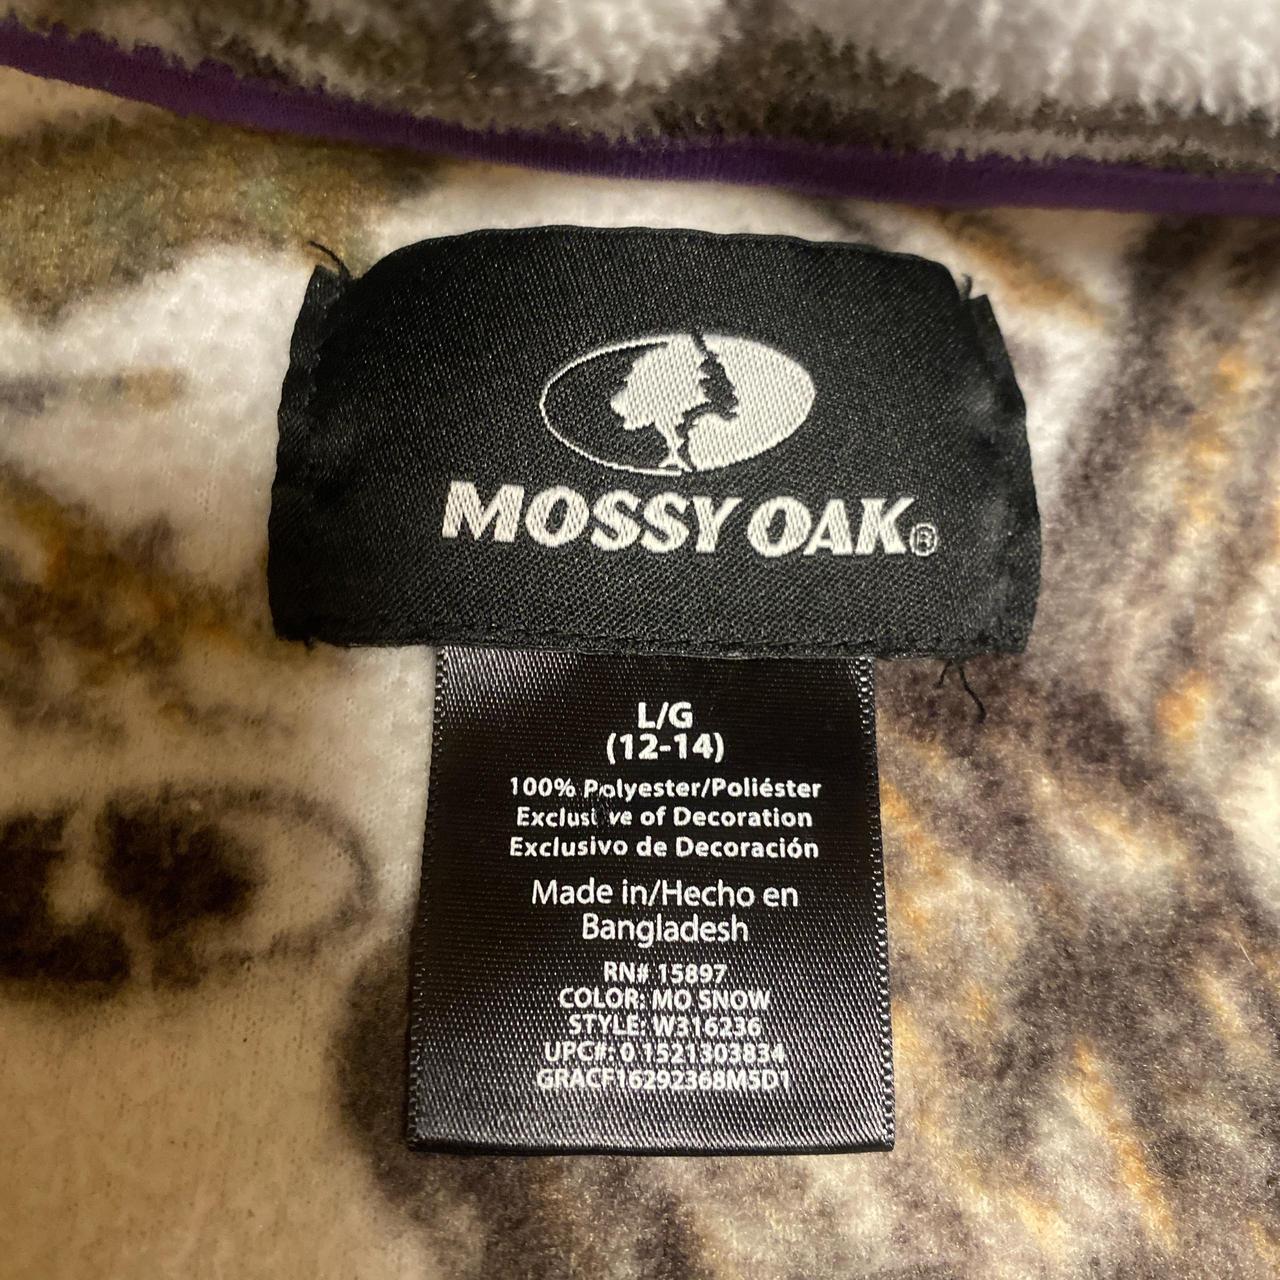 Mossy Oak camo fleece jacket Womens camouflage with... - Depop